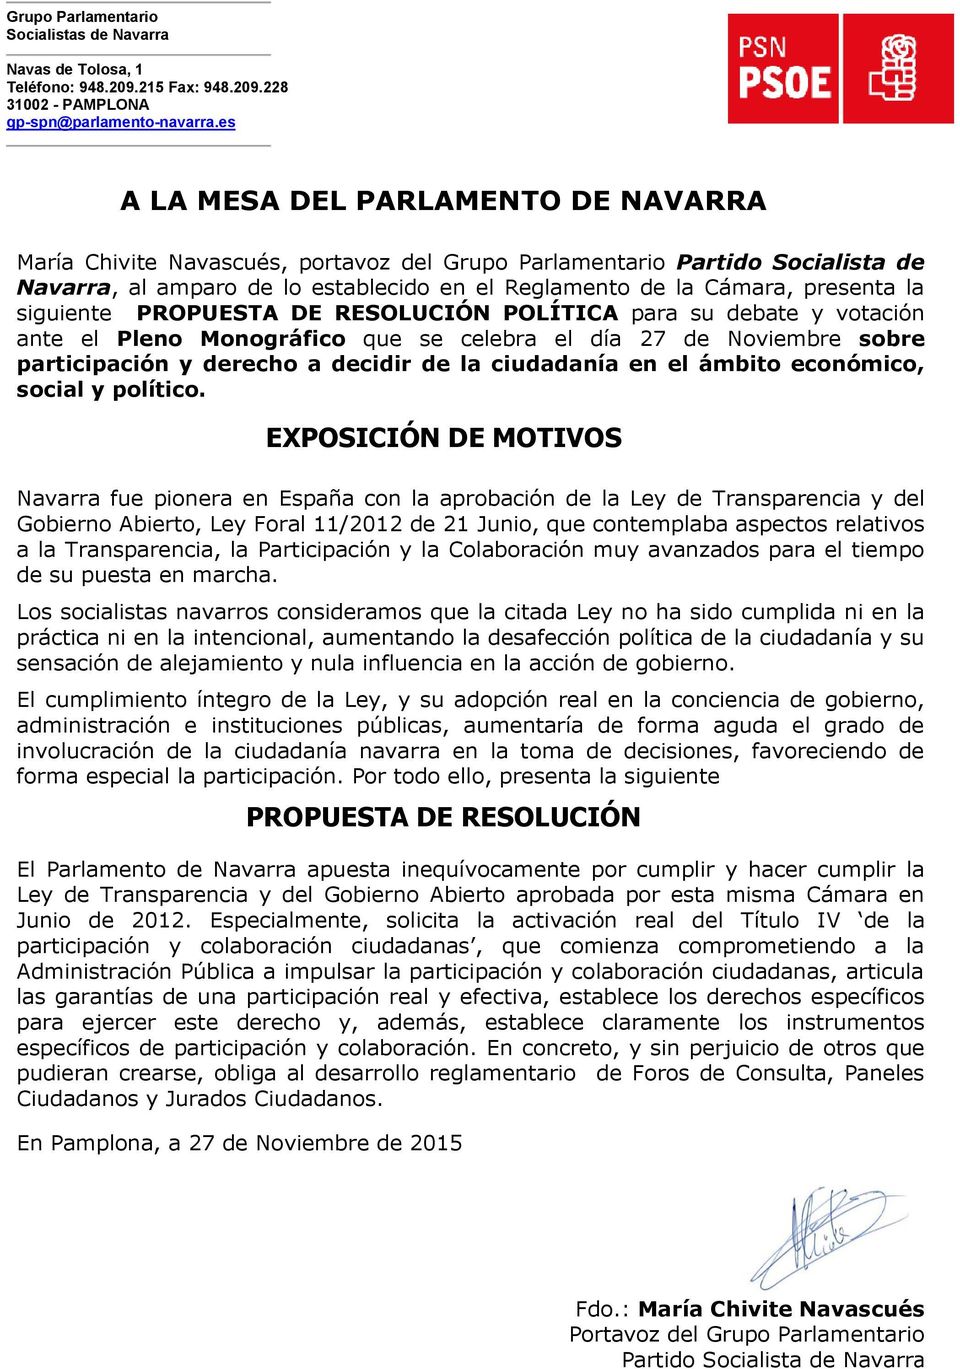 Navarra fue pionera en España con la aprobación de la Ley de Transparencia y del Gobierno Abierto, Ley Foral 11/2012 de 21 Junio, que contemplaba aspectos relativos a la Transparencia, la